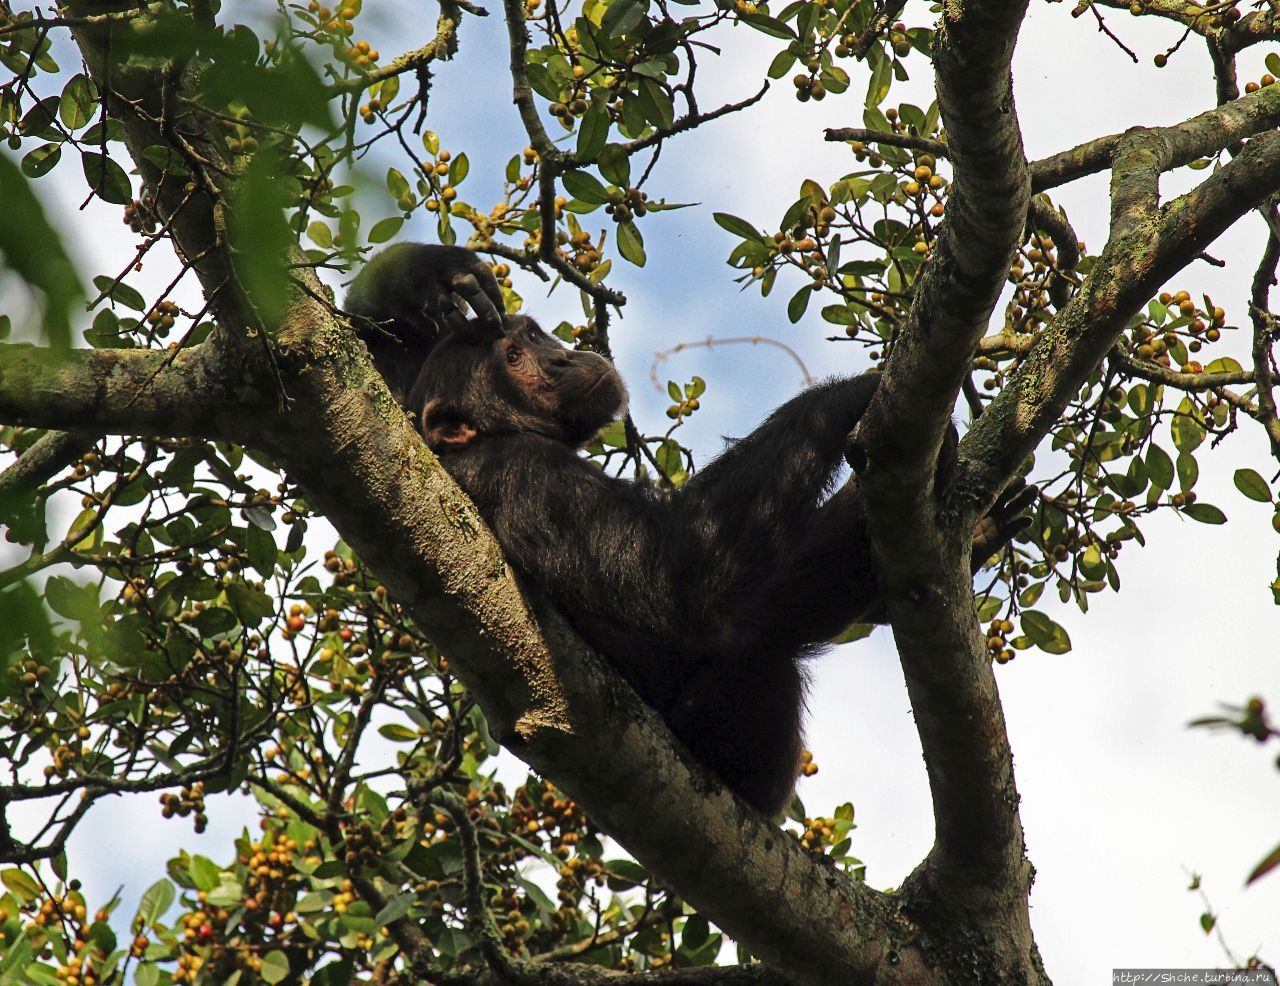 Трудно снимать черных шимпанзе в черном лесу, особенно утром